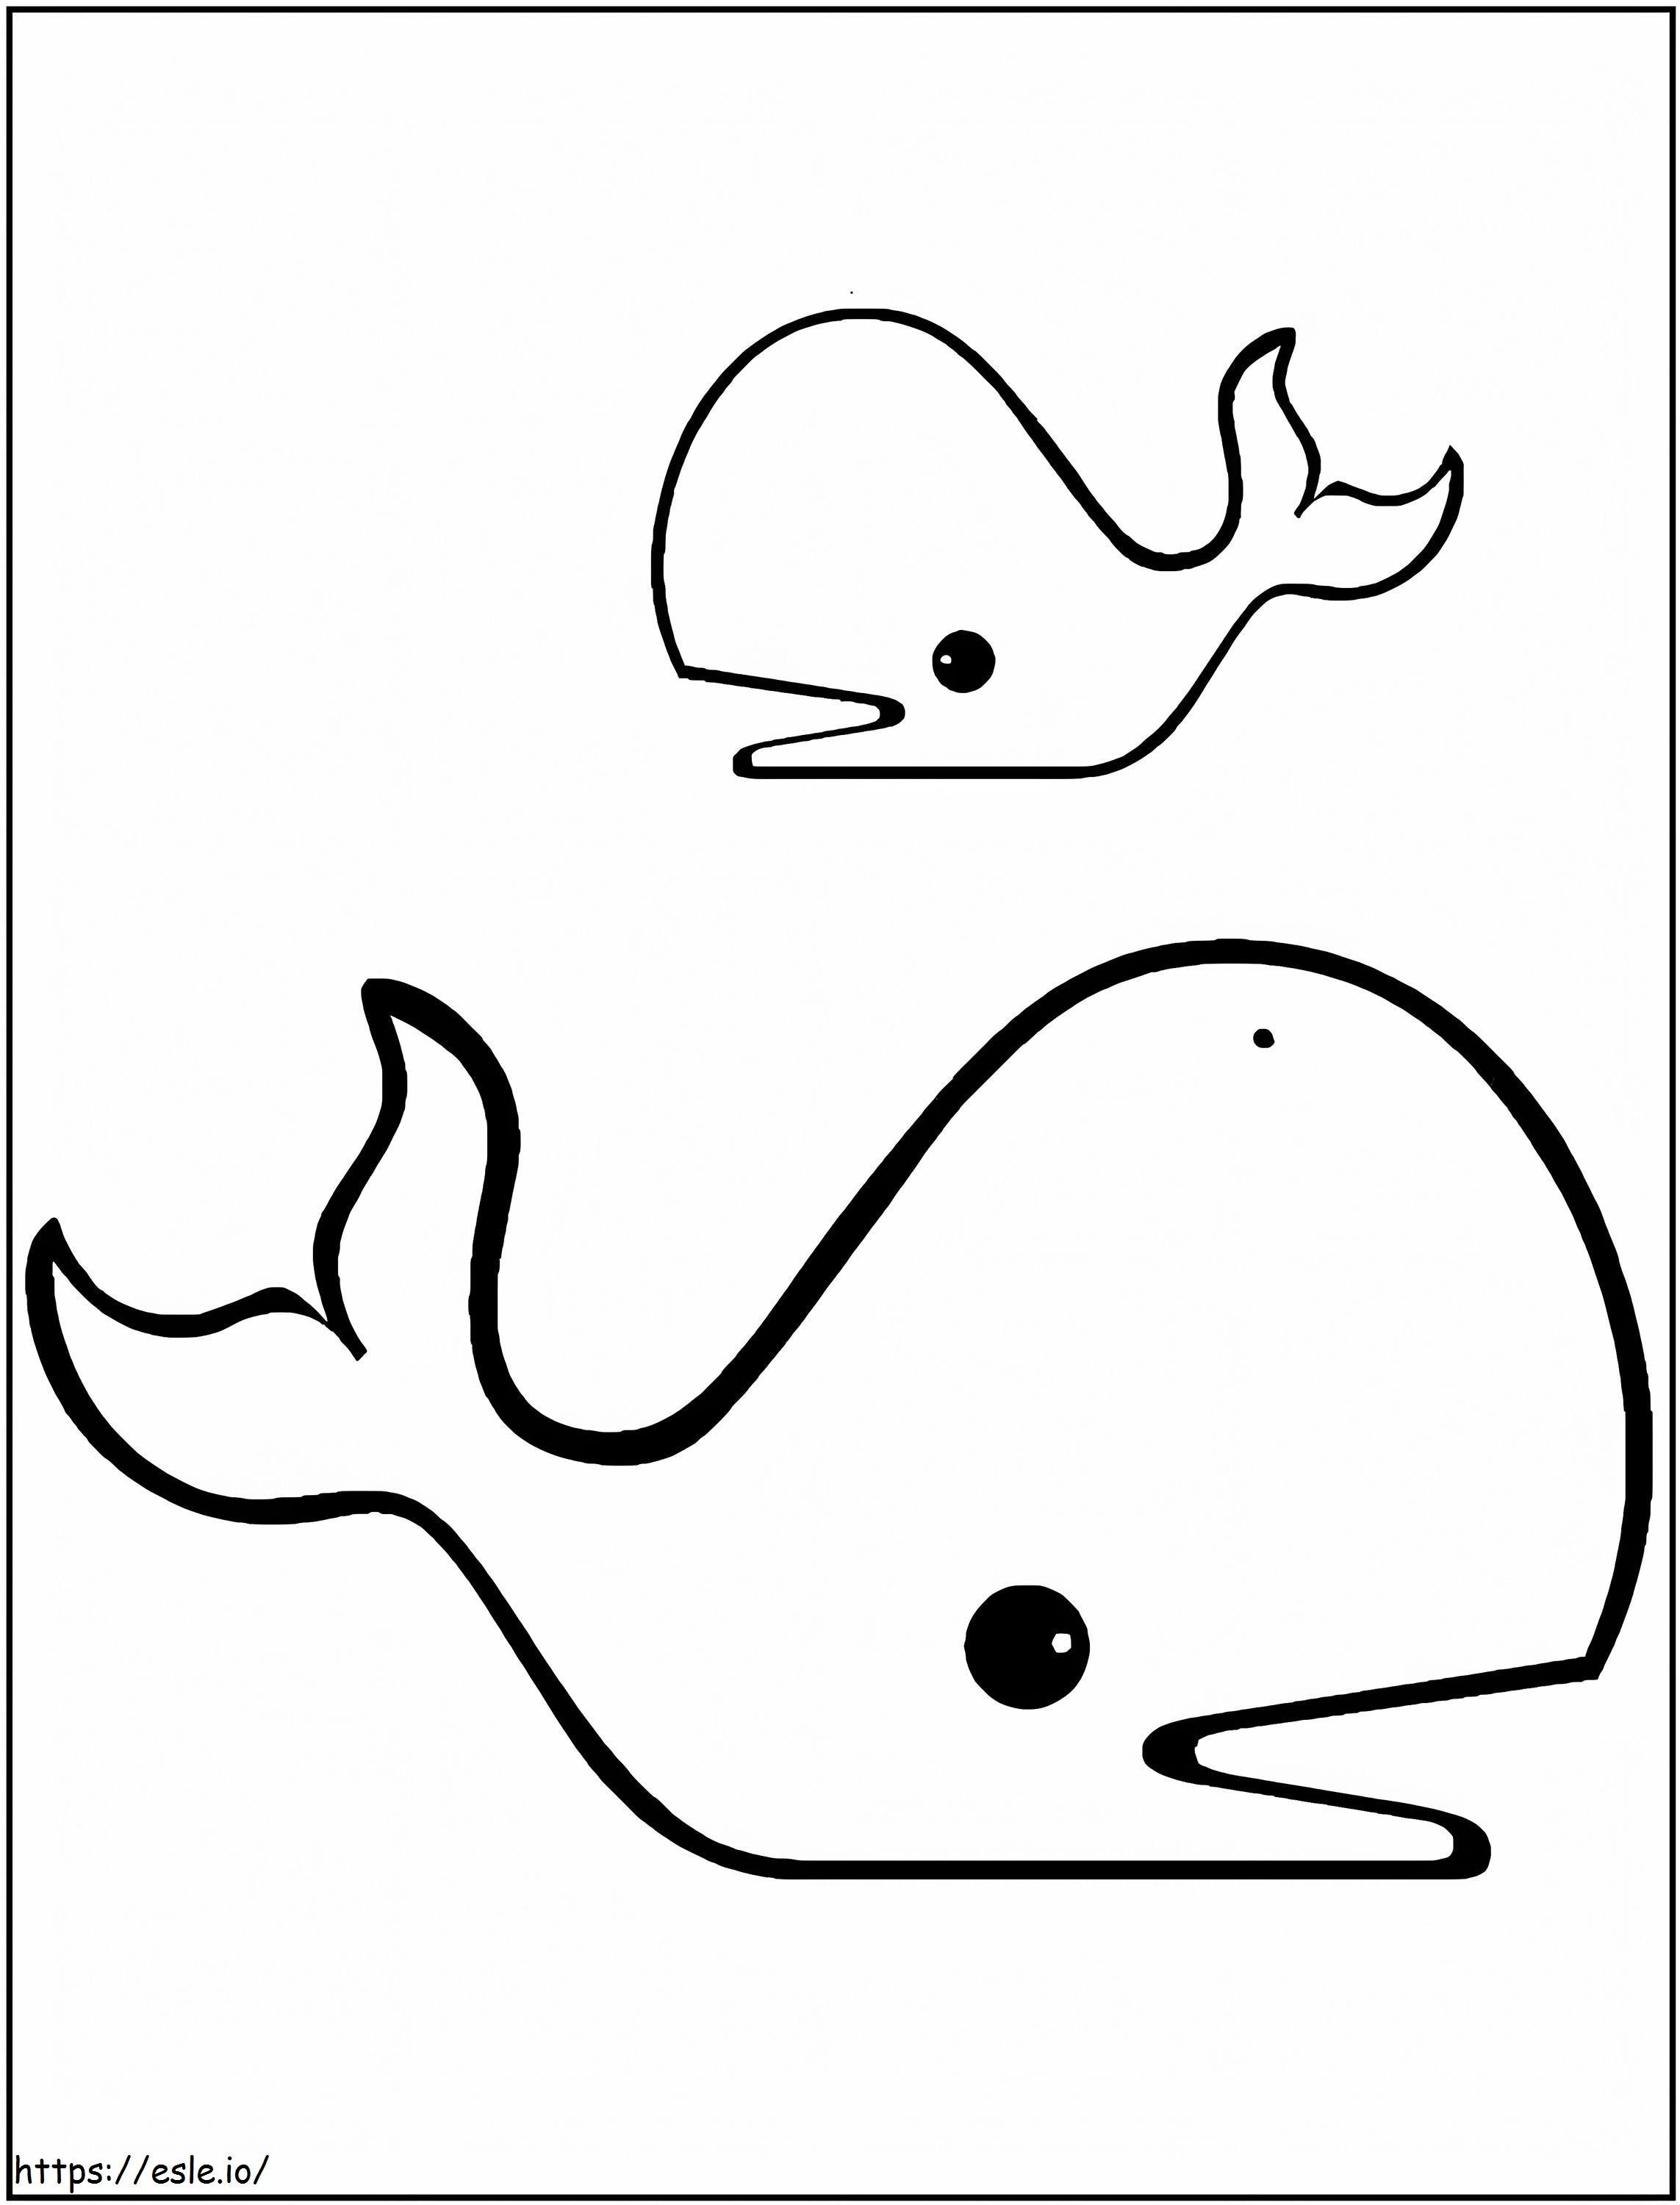 Desenhe duas baleias para colorir